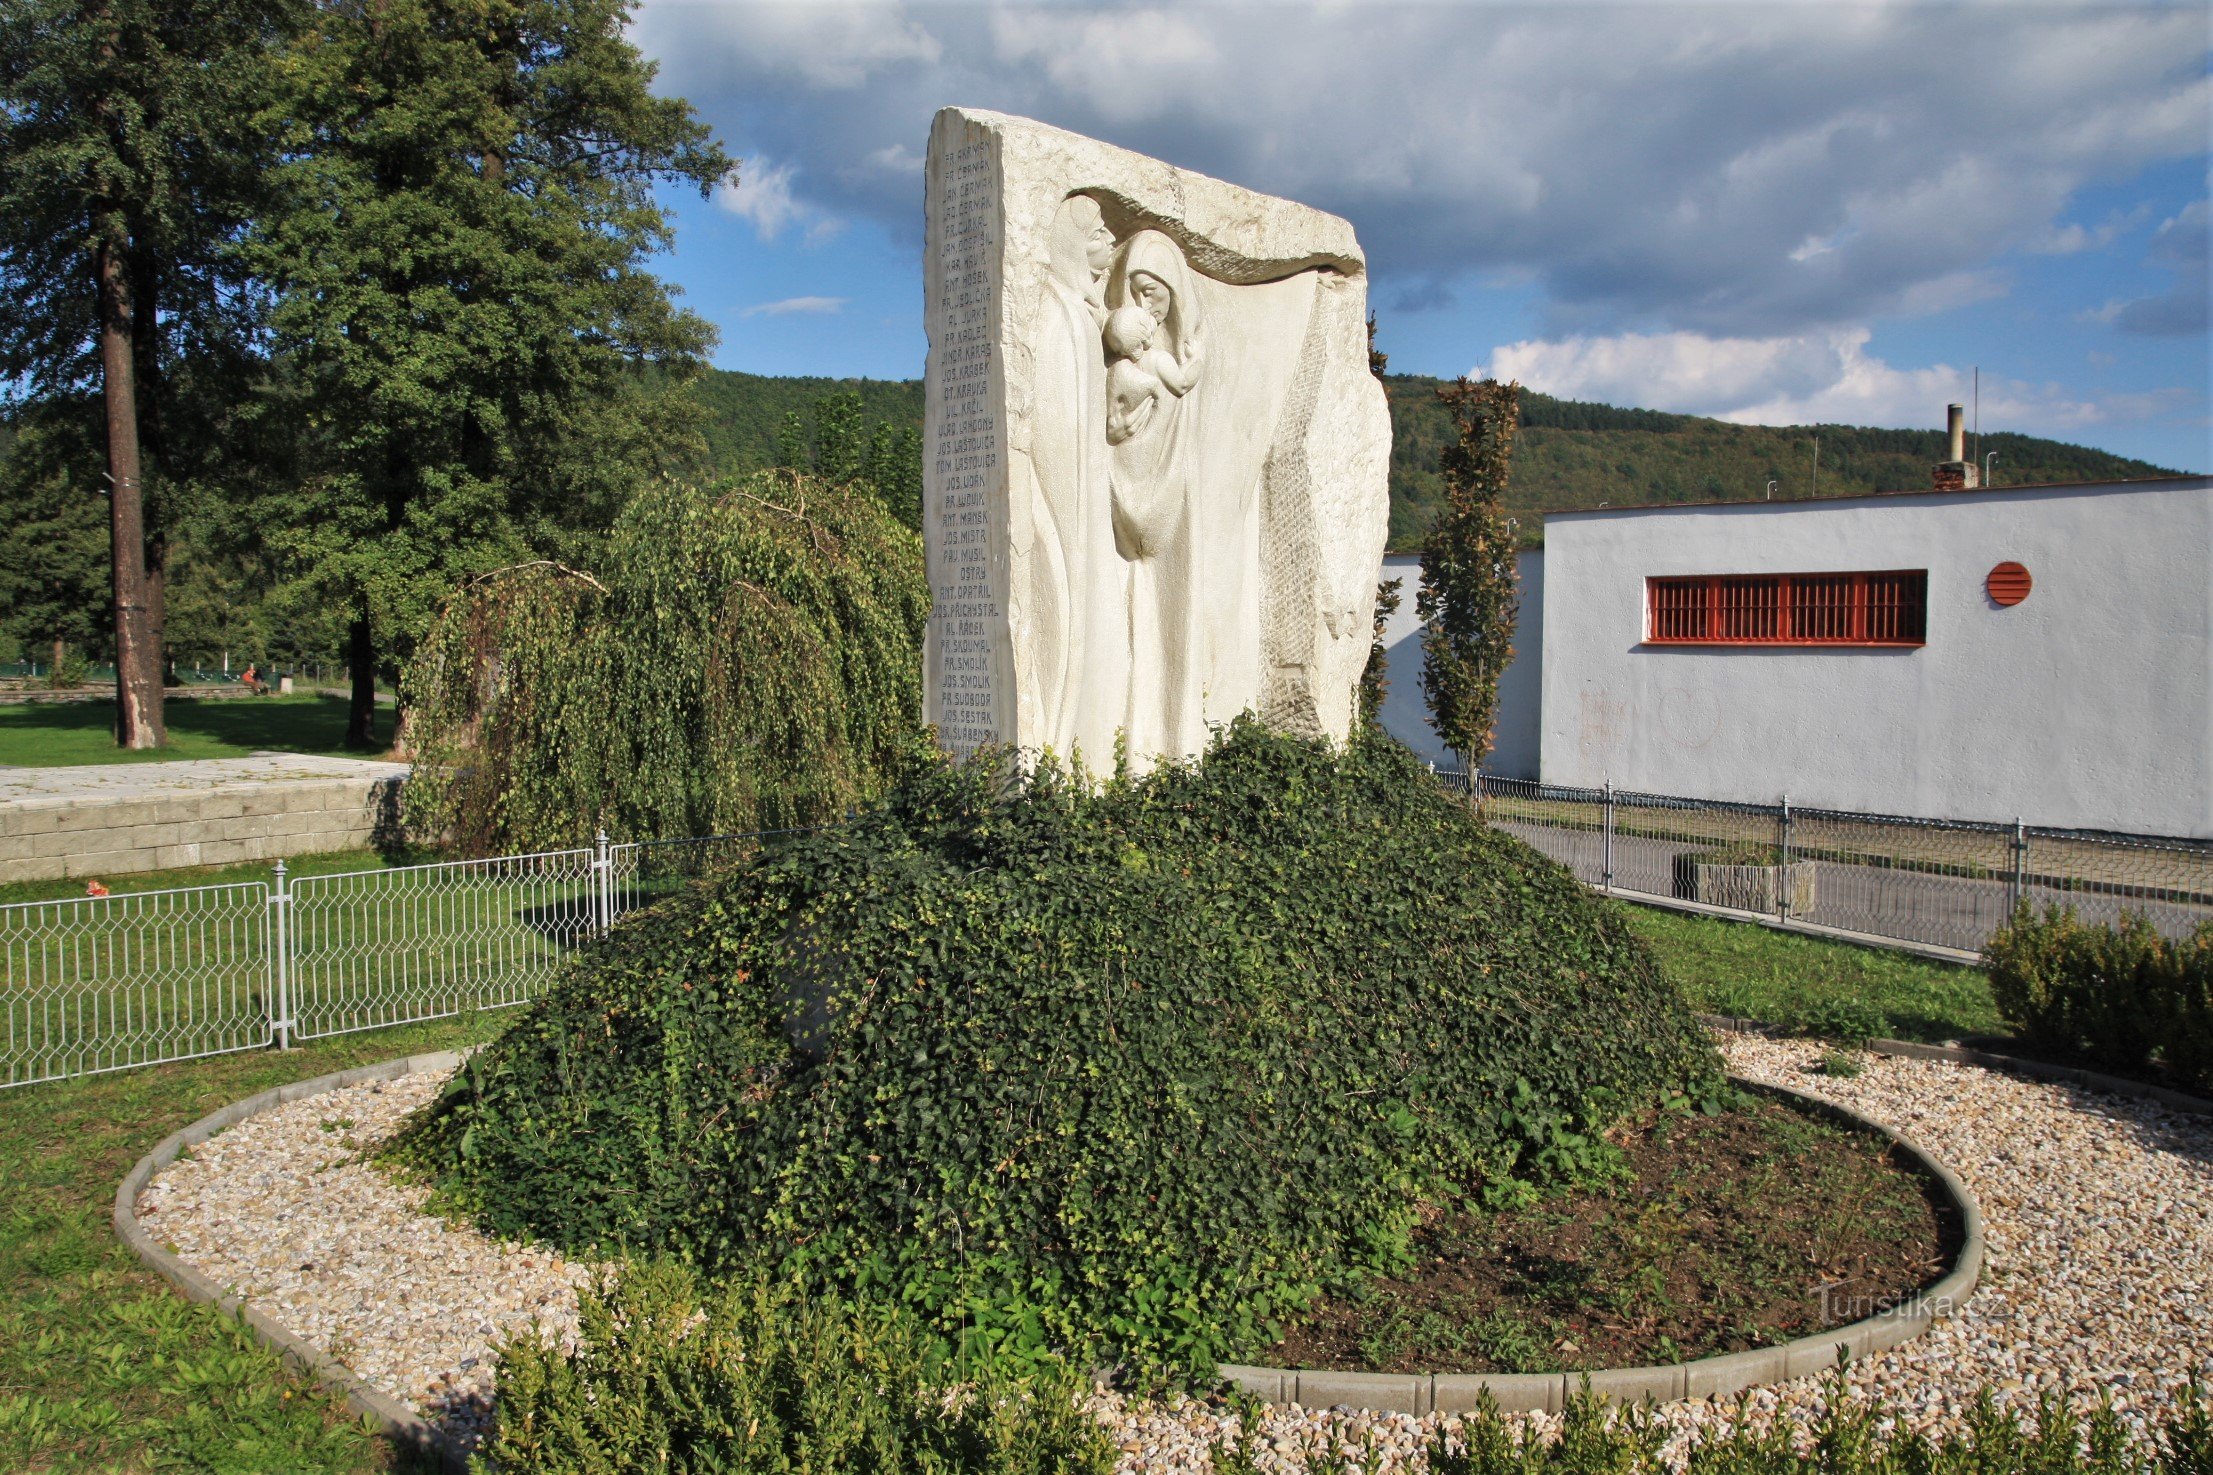 Nedvědice - Monumento alle vittime della prima guerra mondiale